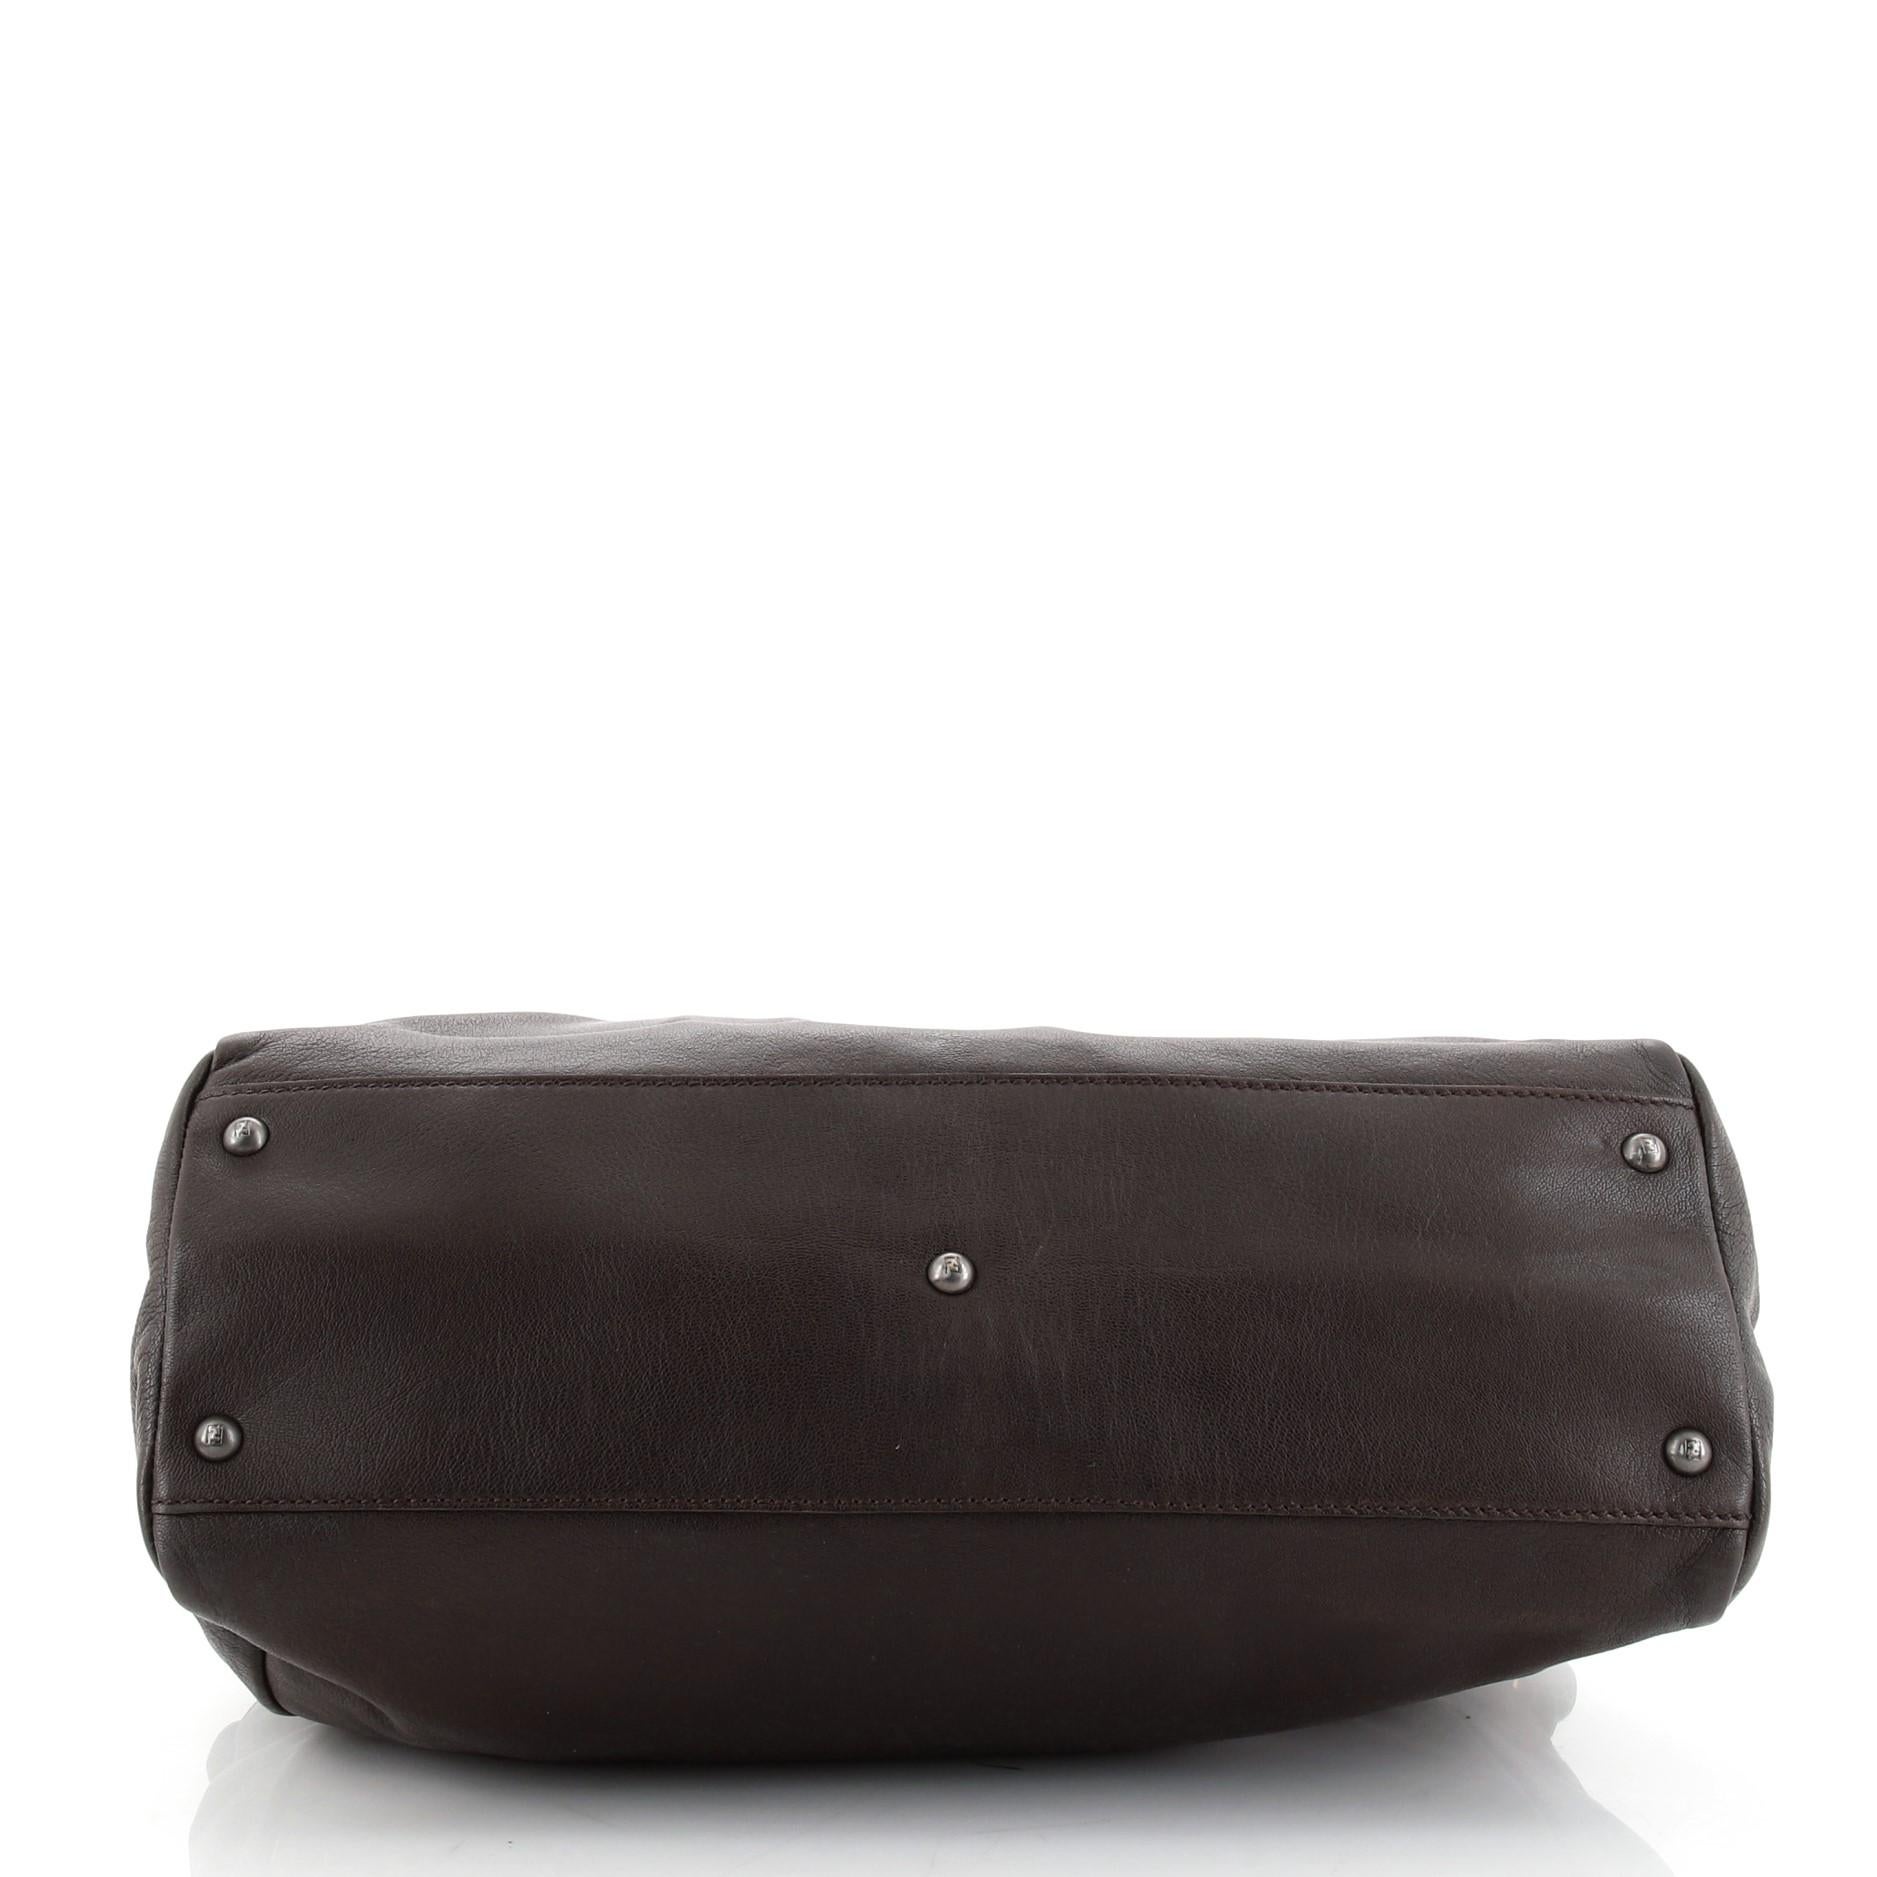 Black Fendi Peekaboo Bag Grained Leather Large